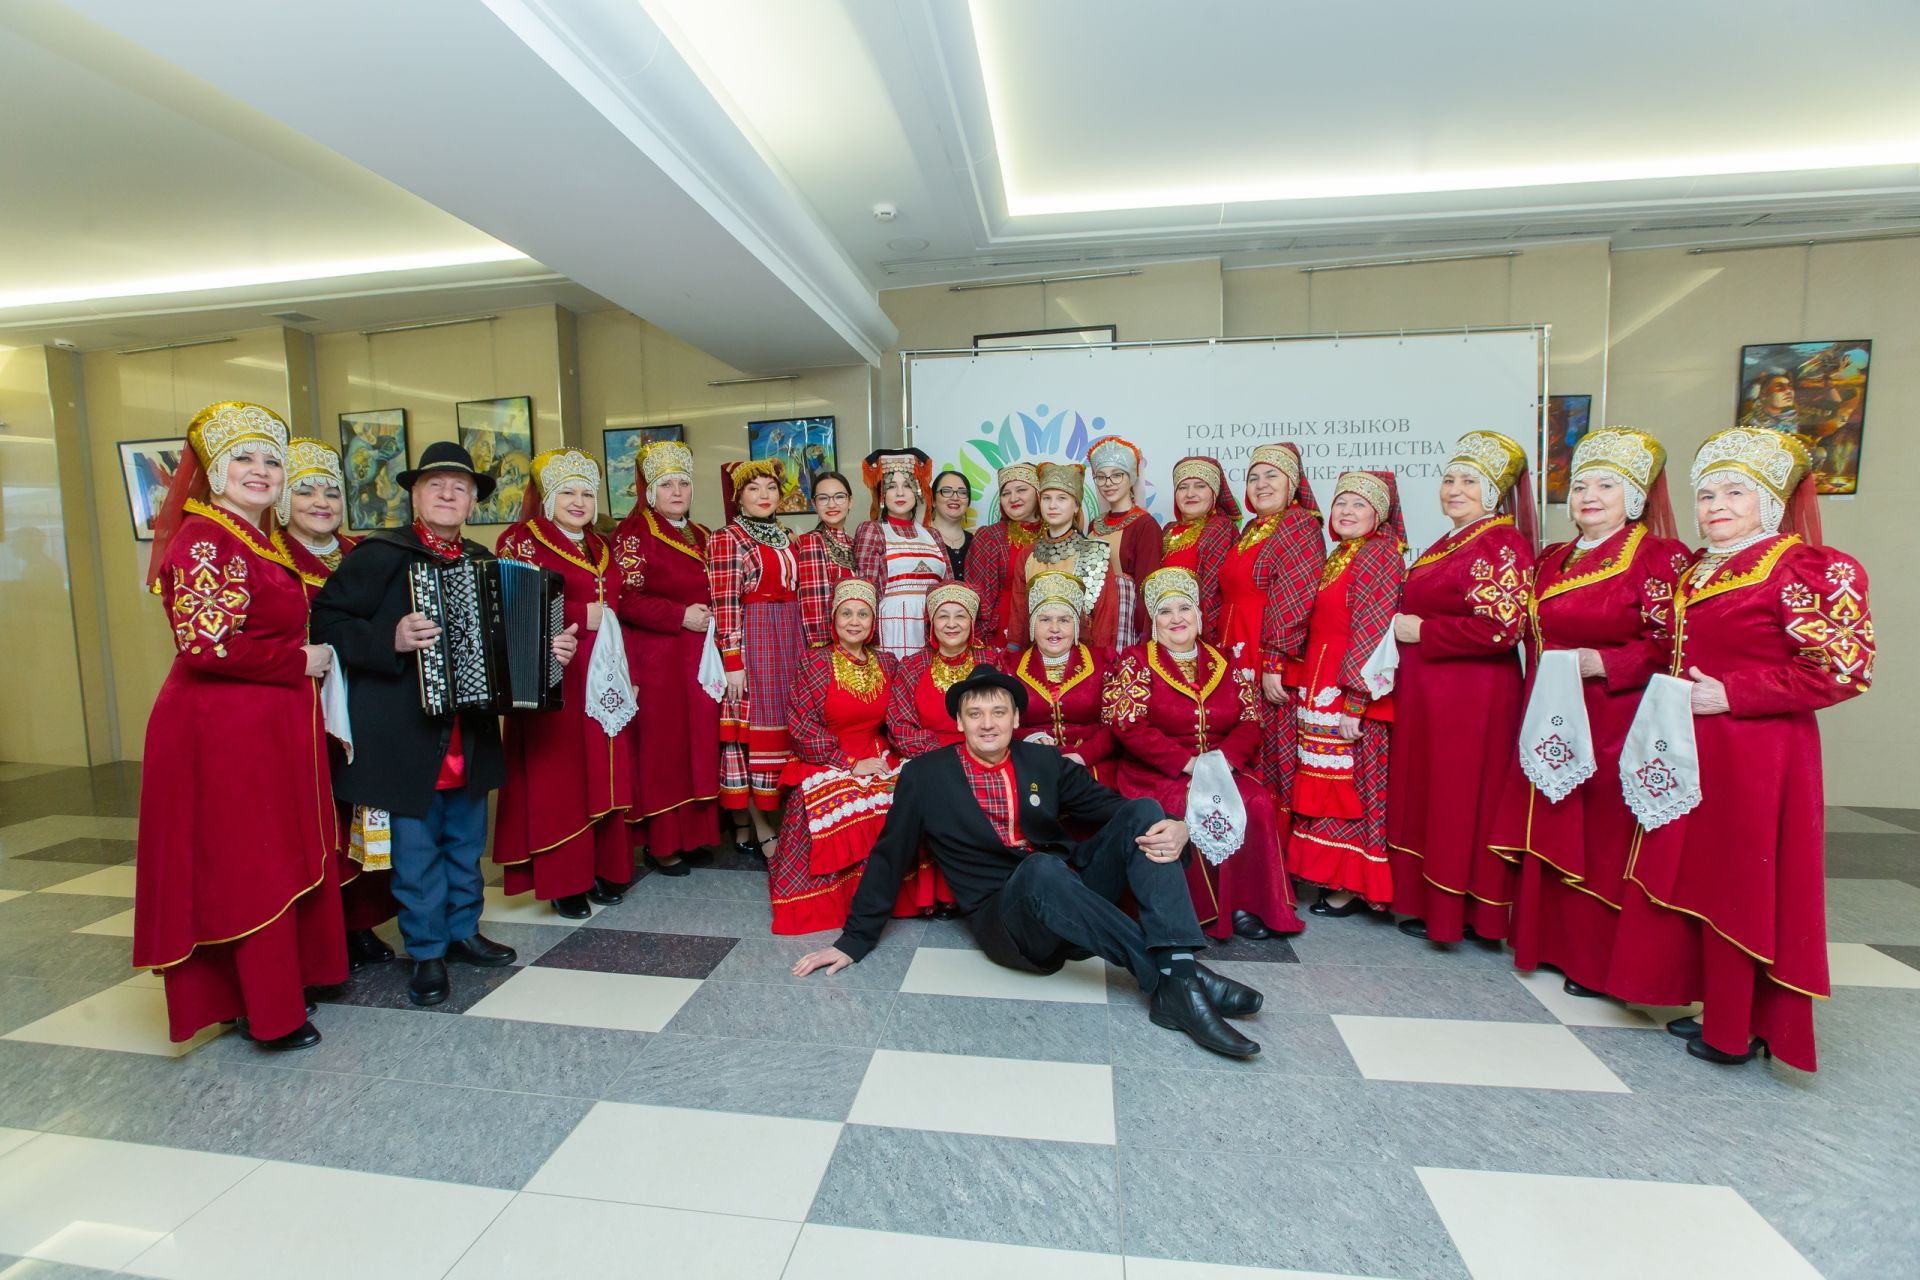 Нижнекамские кряшены выступили на открытии Года родных языков и народного единства в городе нефтехимиков